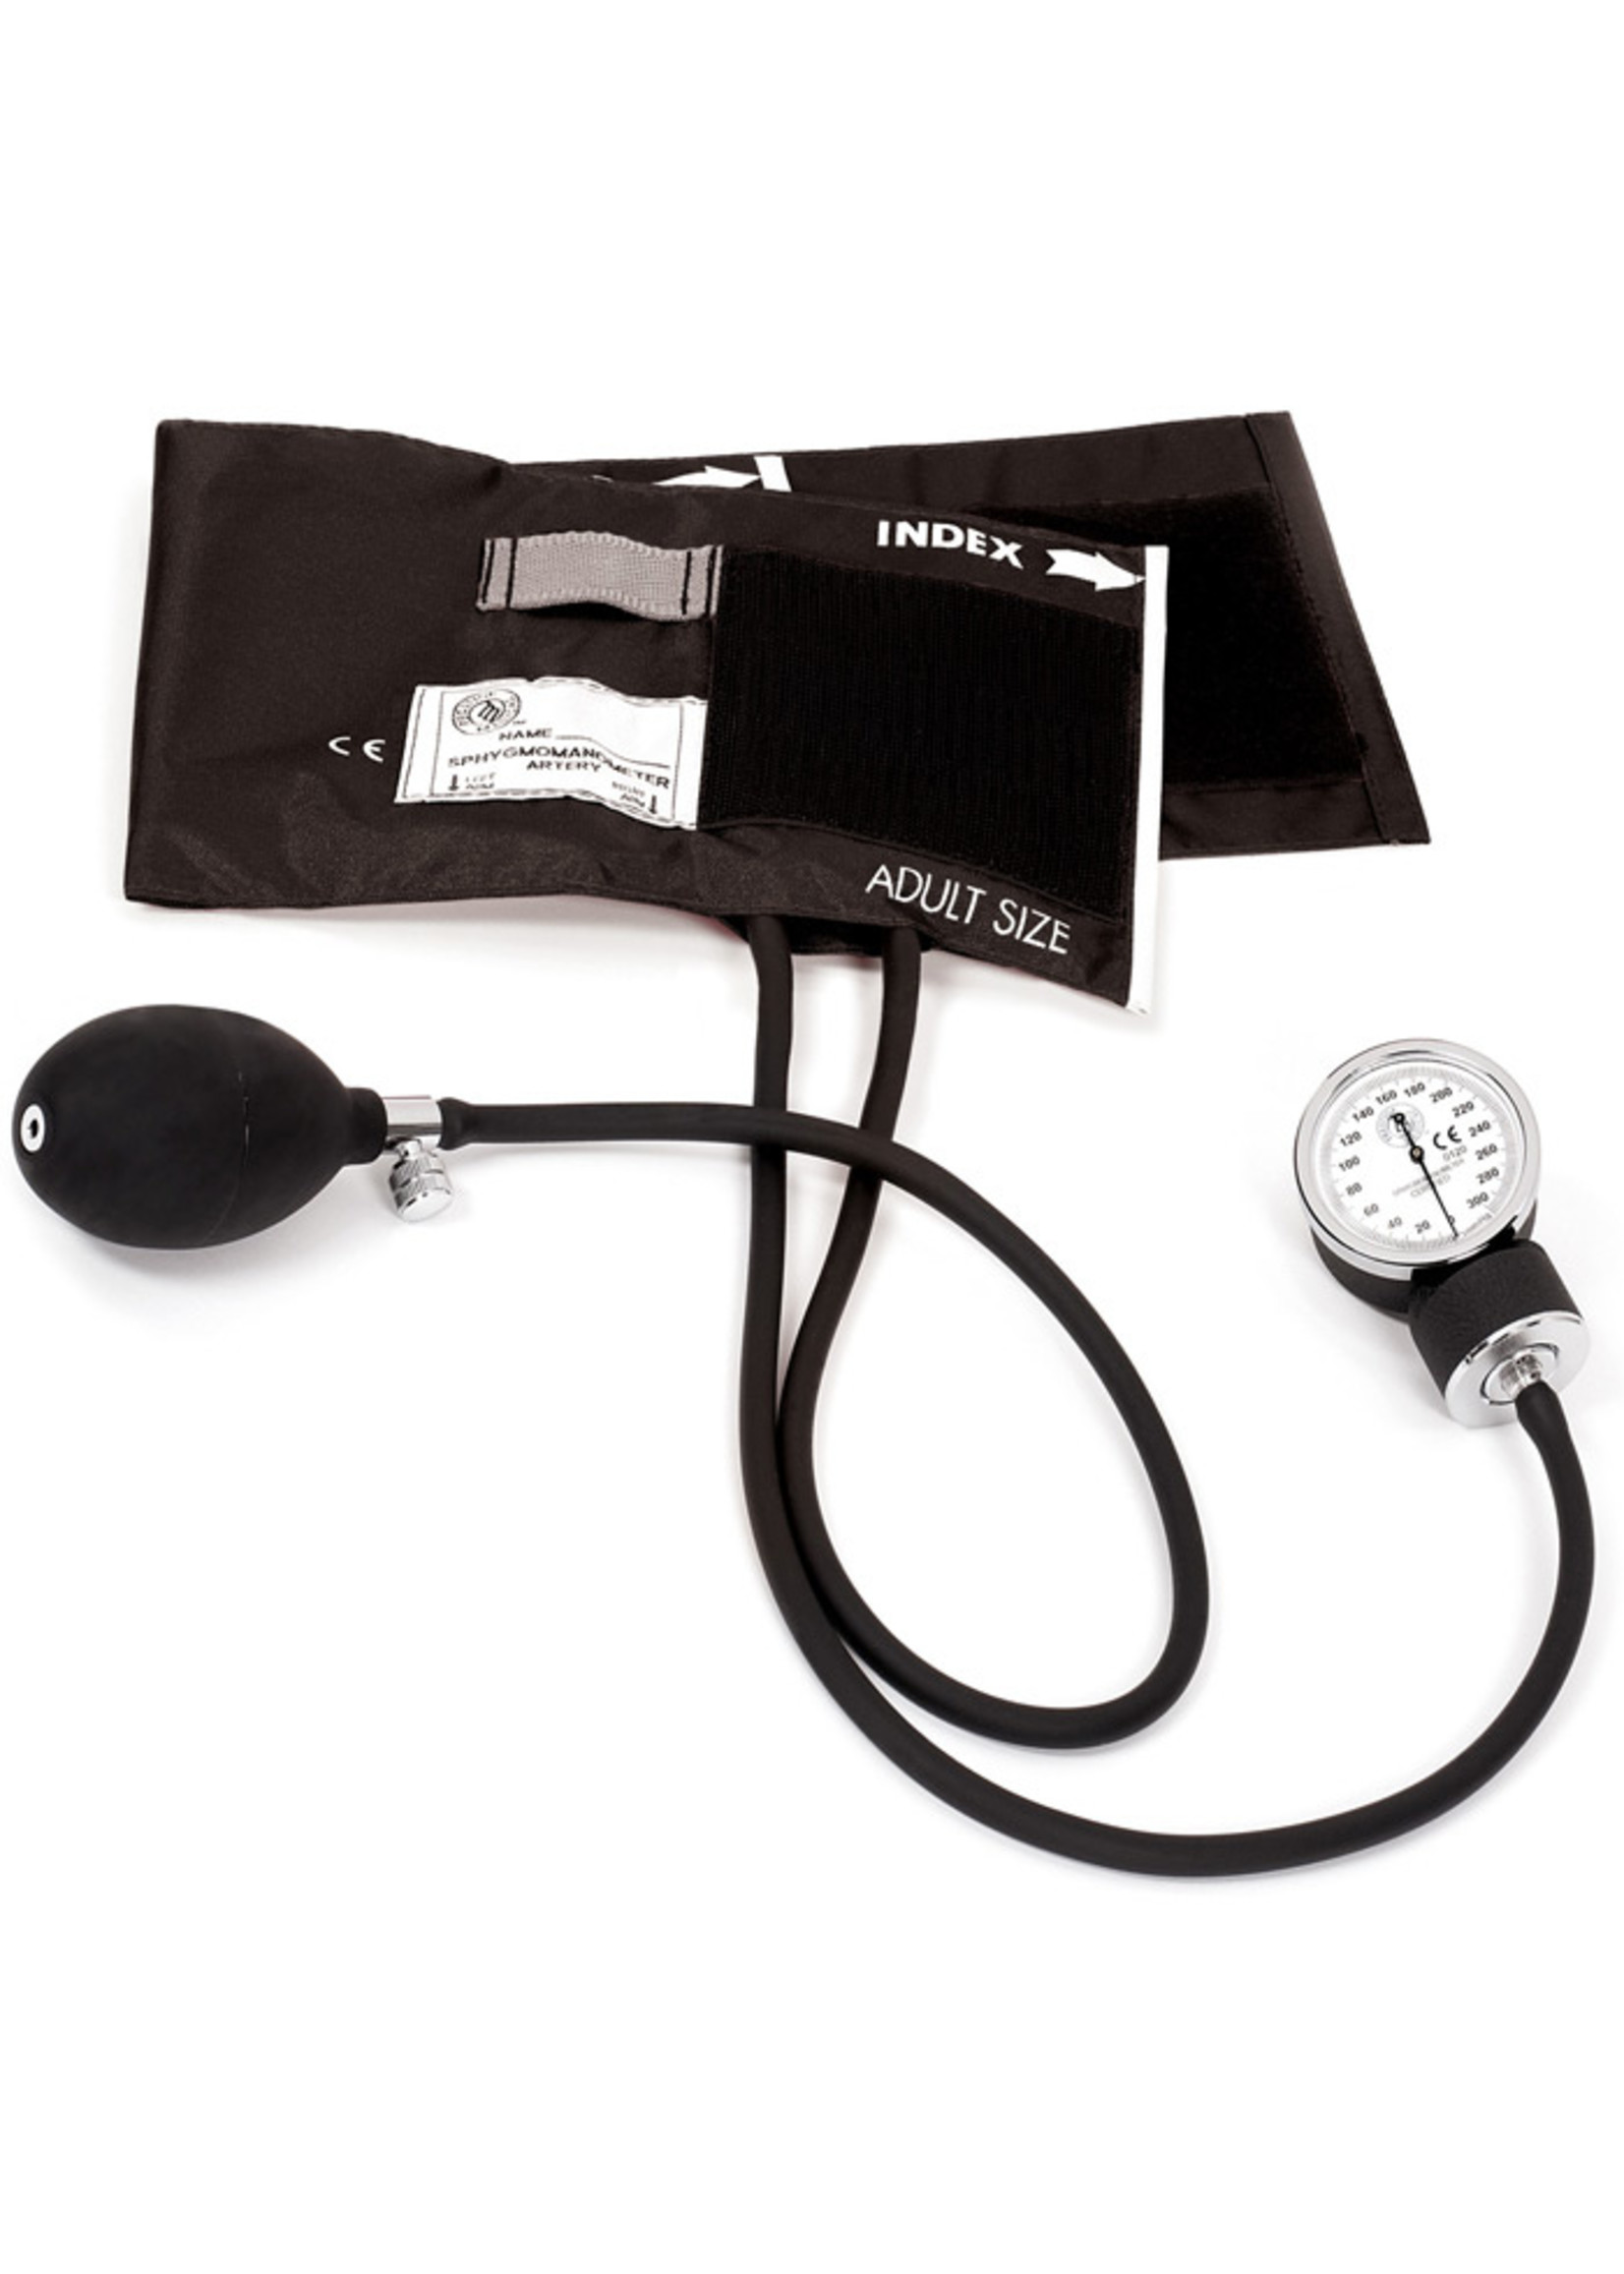 Prestige Medical Premium Aneroid Sphygmomanometer Black